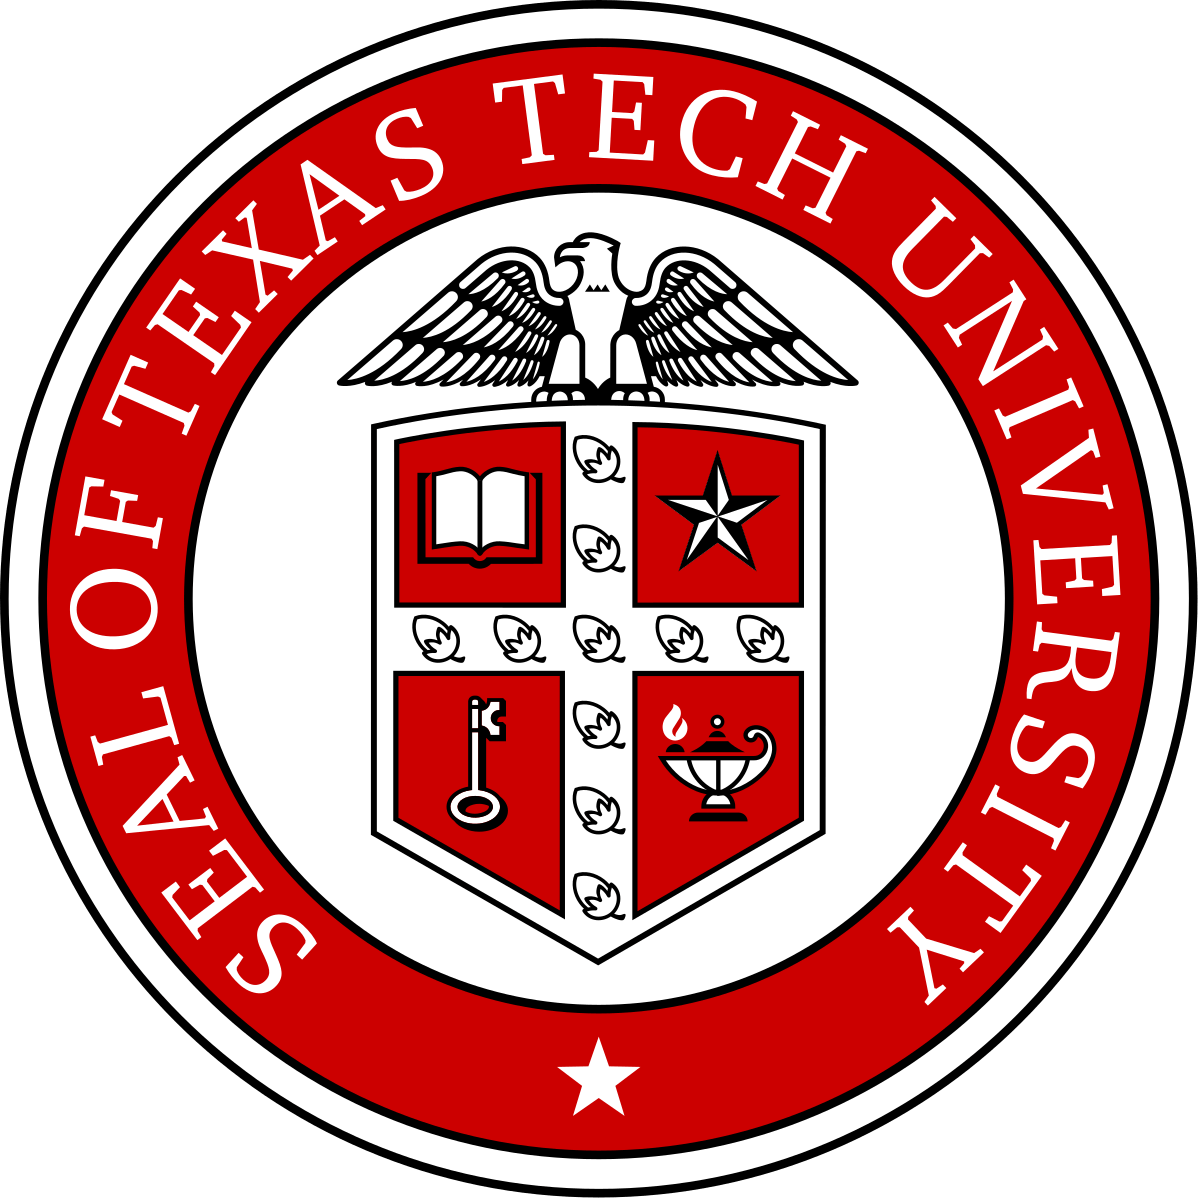 Texas Tech Logo - Texas Tech University